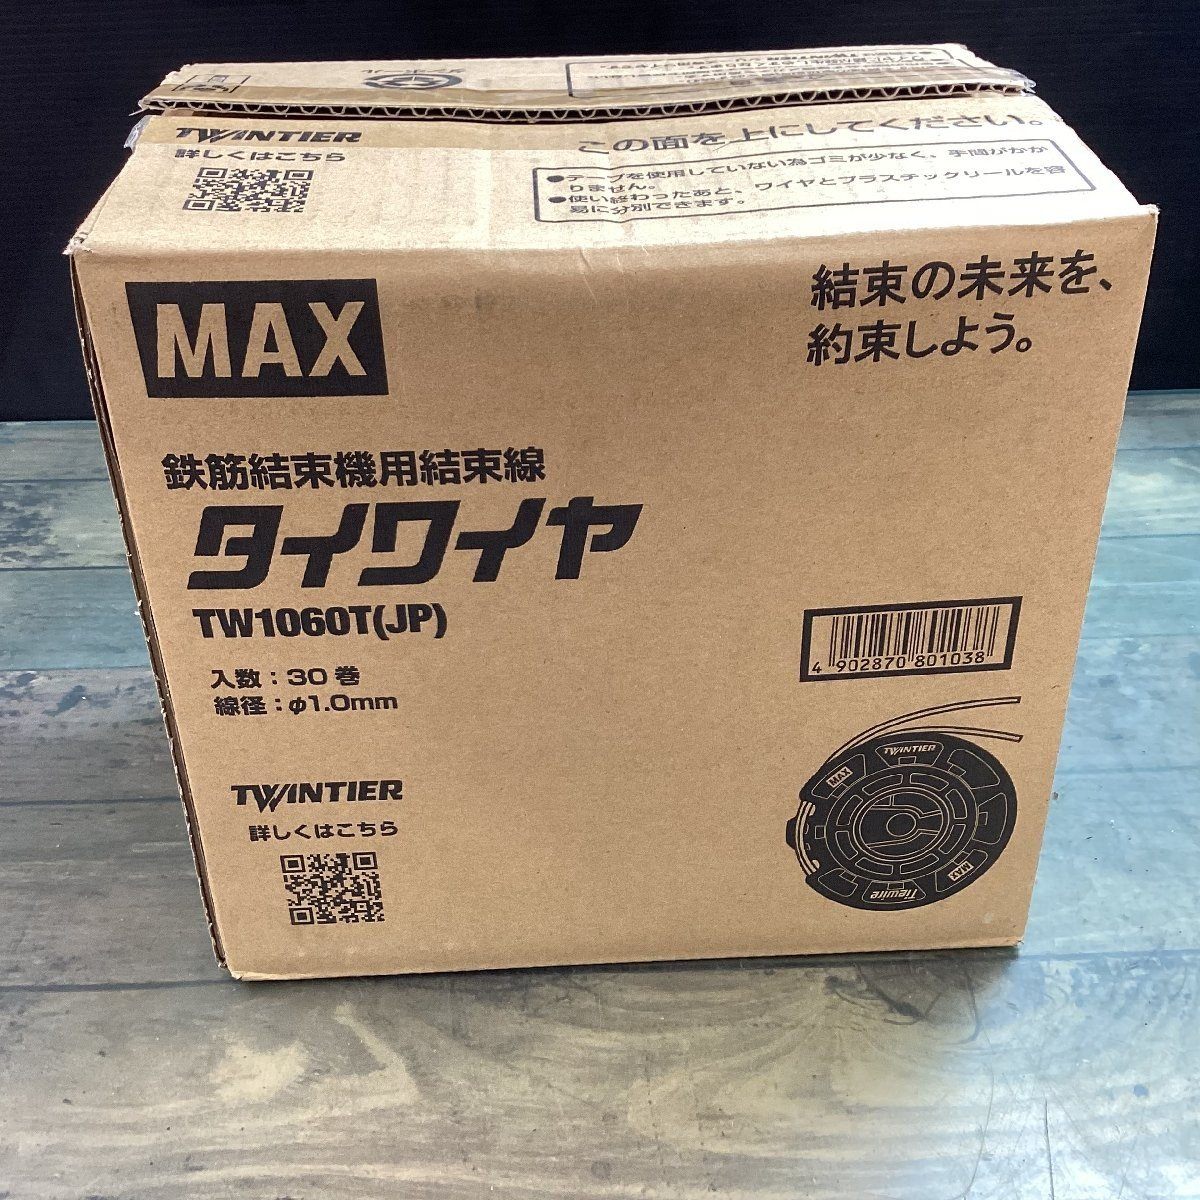 MAX マックス 鉄筋結束機 タイワイヤ TW1060T(JP) 30巻【東大和店